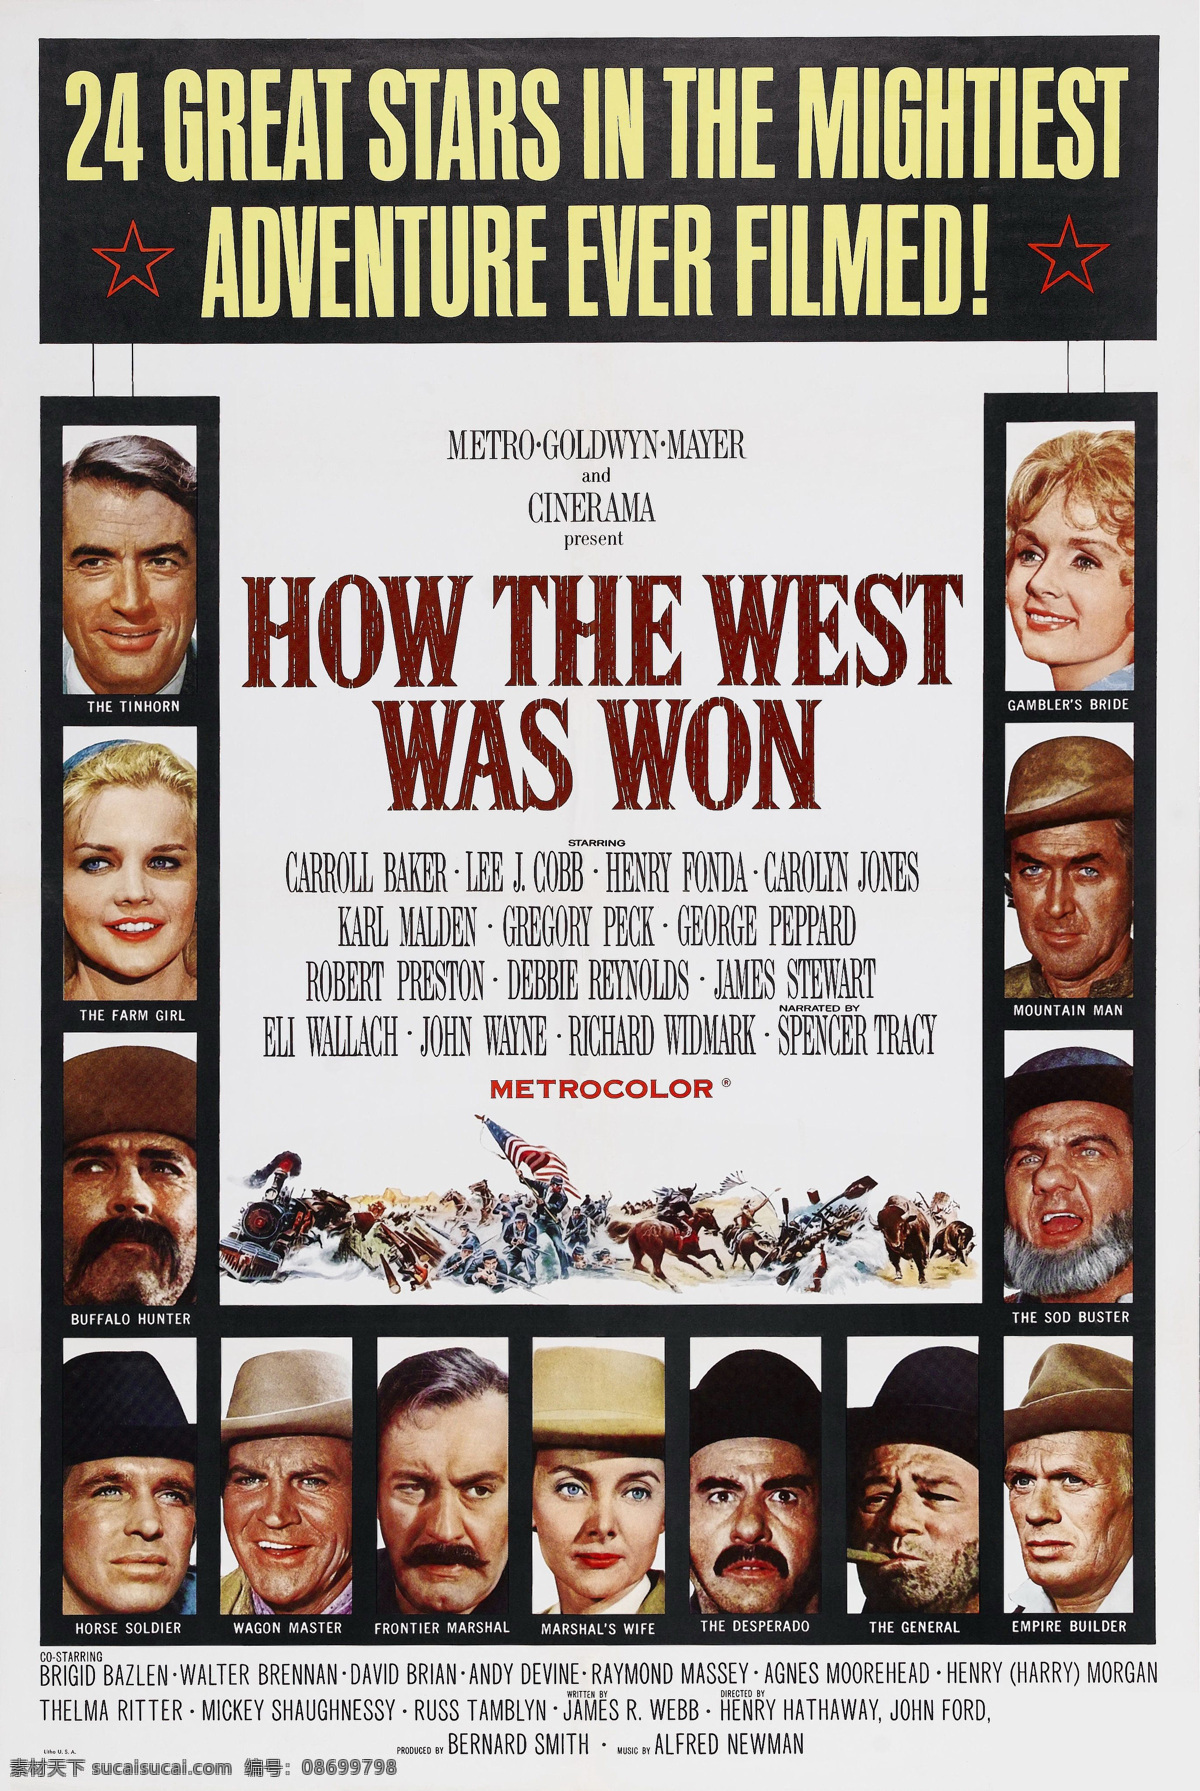 西部开拓史 老电影海报 平西志 亨利 方达 约翰 韦恩 卡罗尔 贝克 老电影 电影海报 影视娱乐 文化艺术